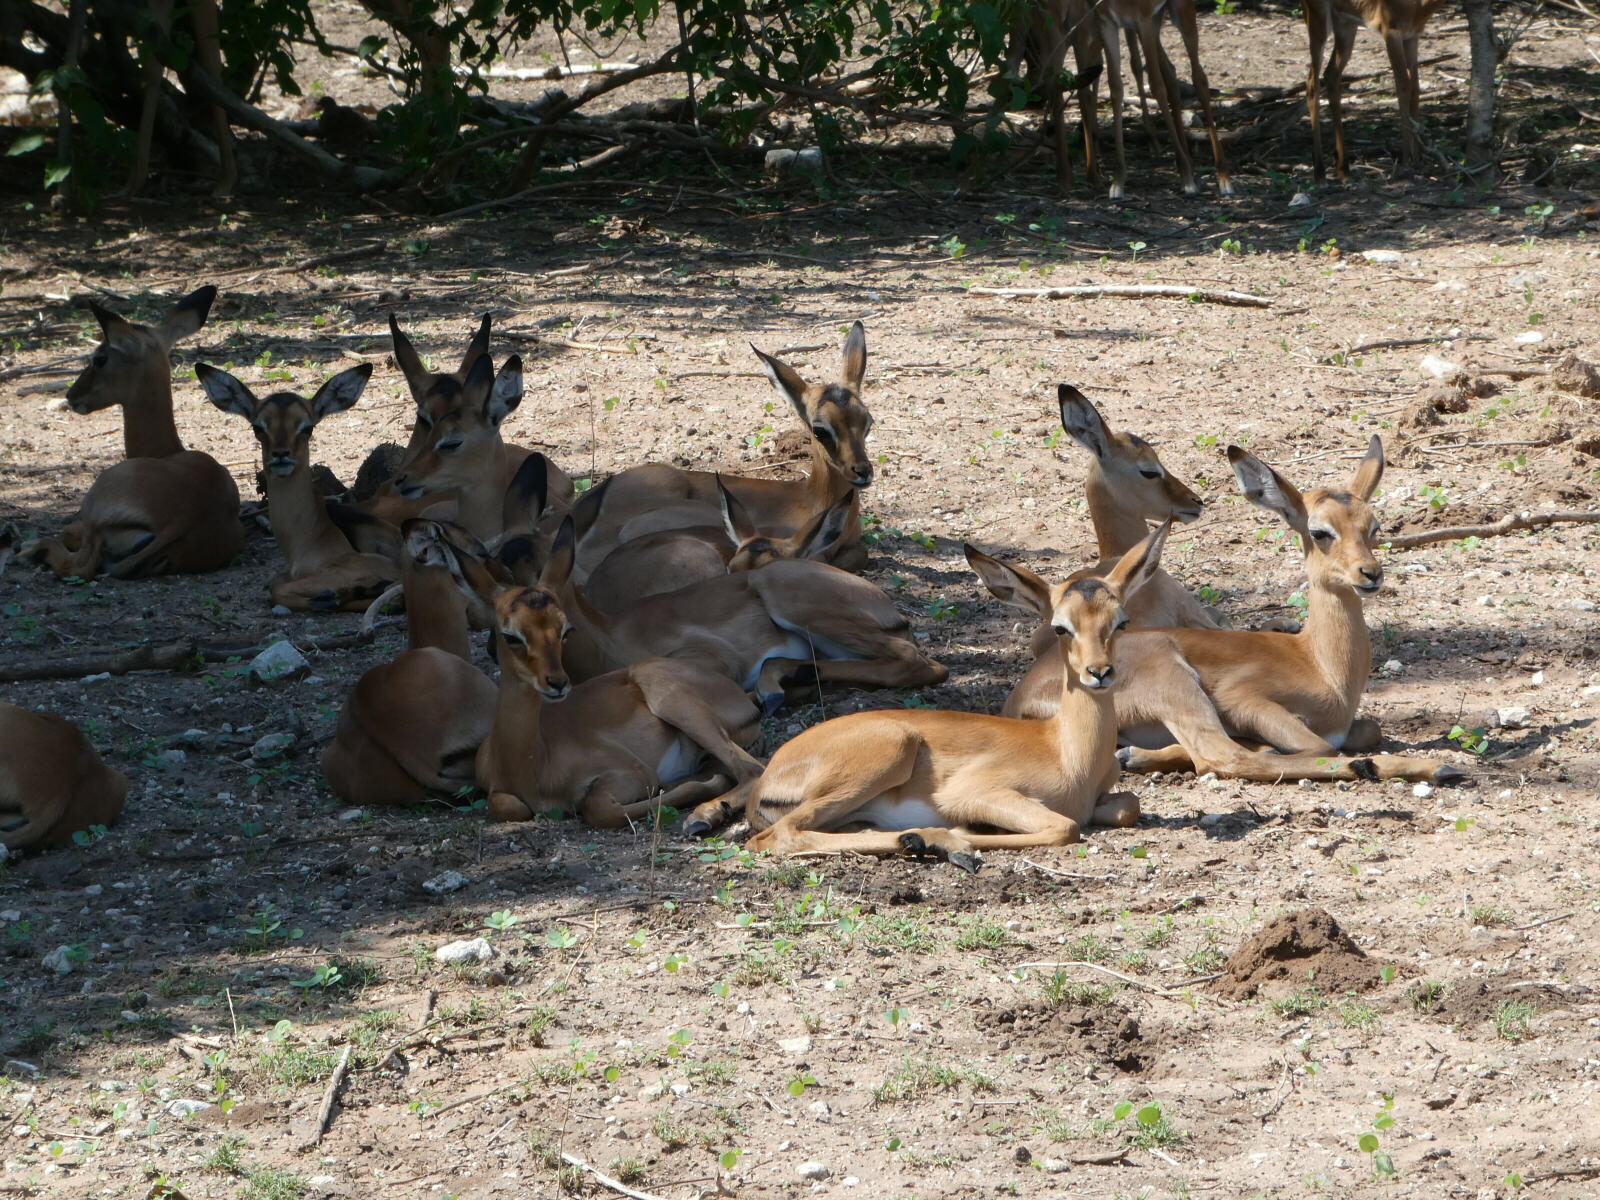 Impala in Chobe national park, Botswana